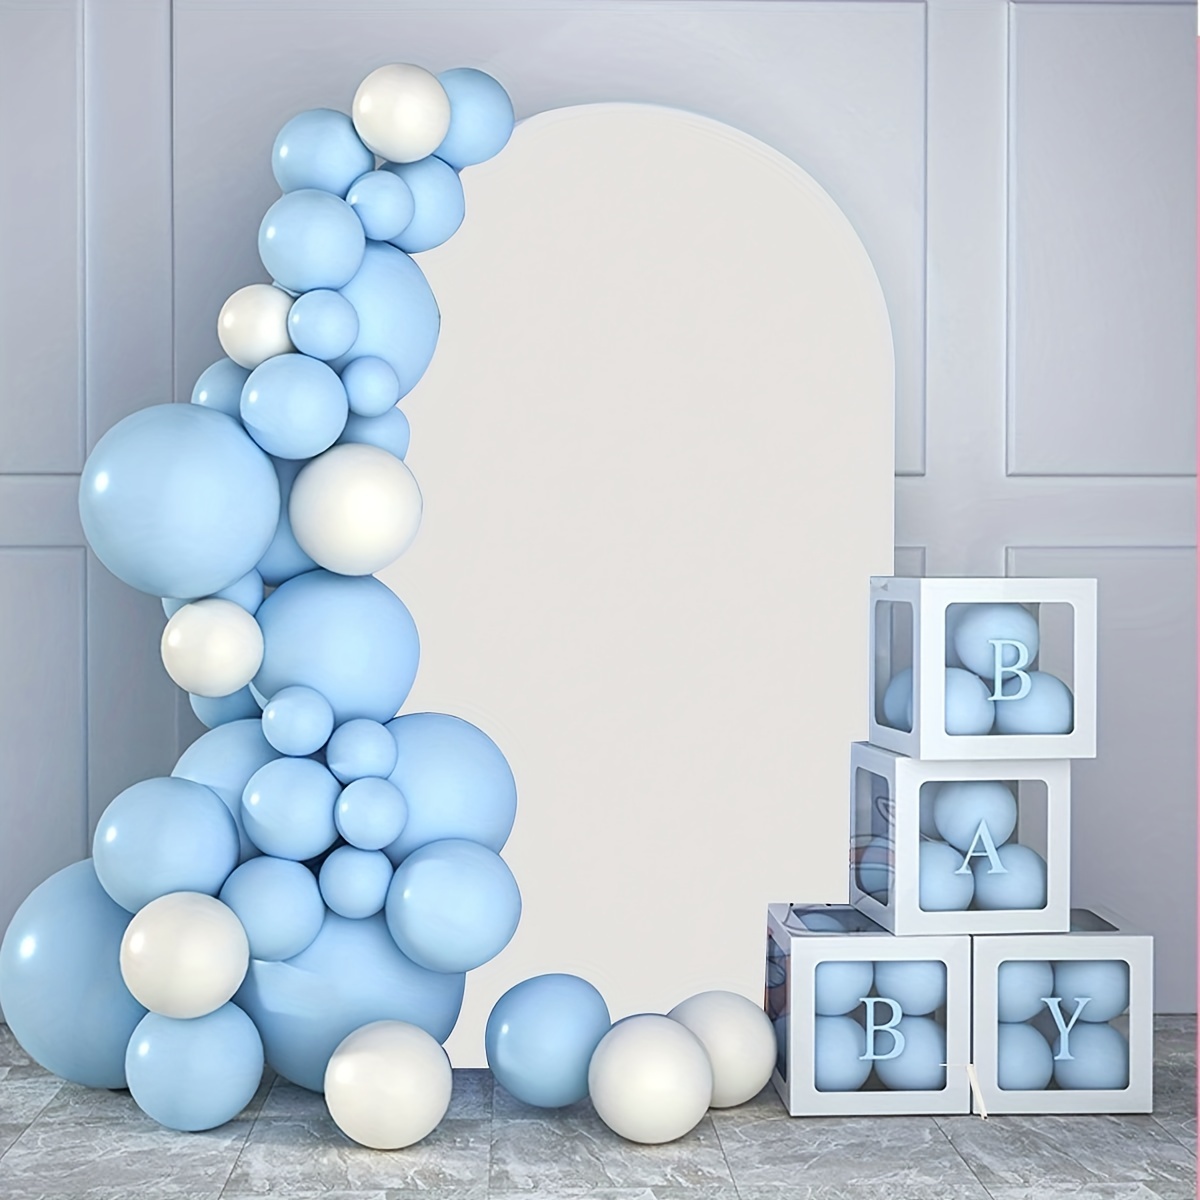 Paquete de 117 decoraciones de primer cumpleaños para bebé, suministros  azules de fiesta de cumpleaños de 1 año para bebé niño con kit de guirnalda  de